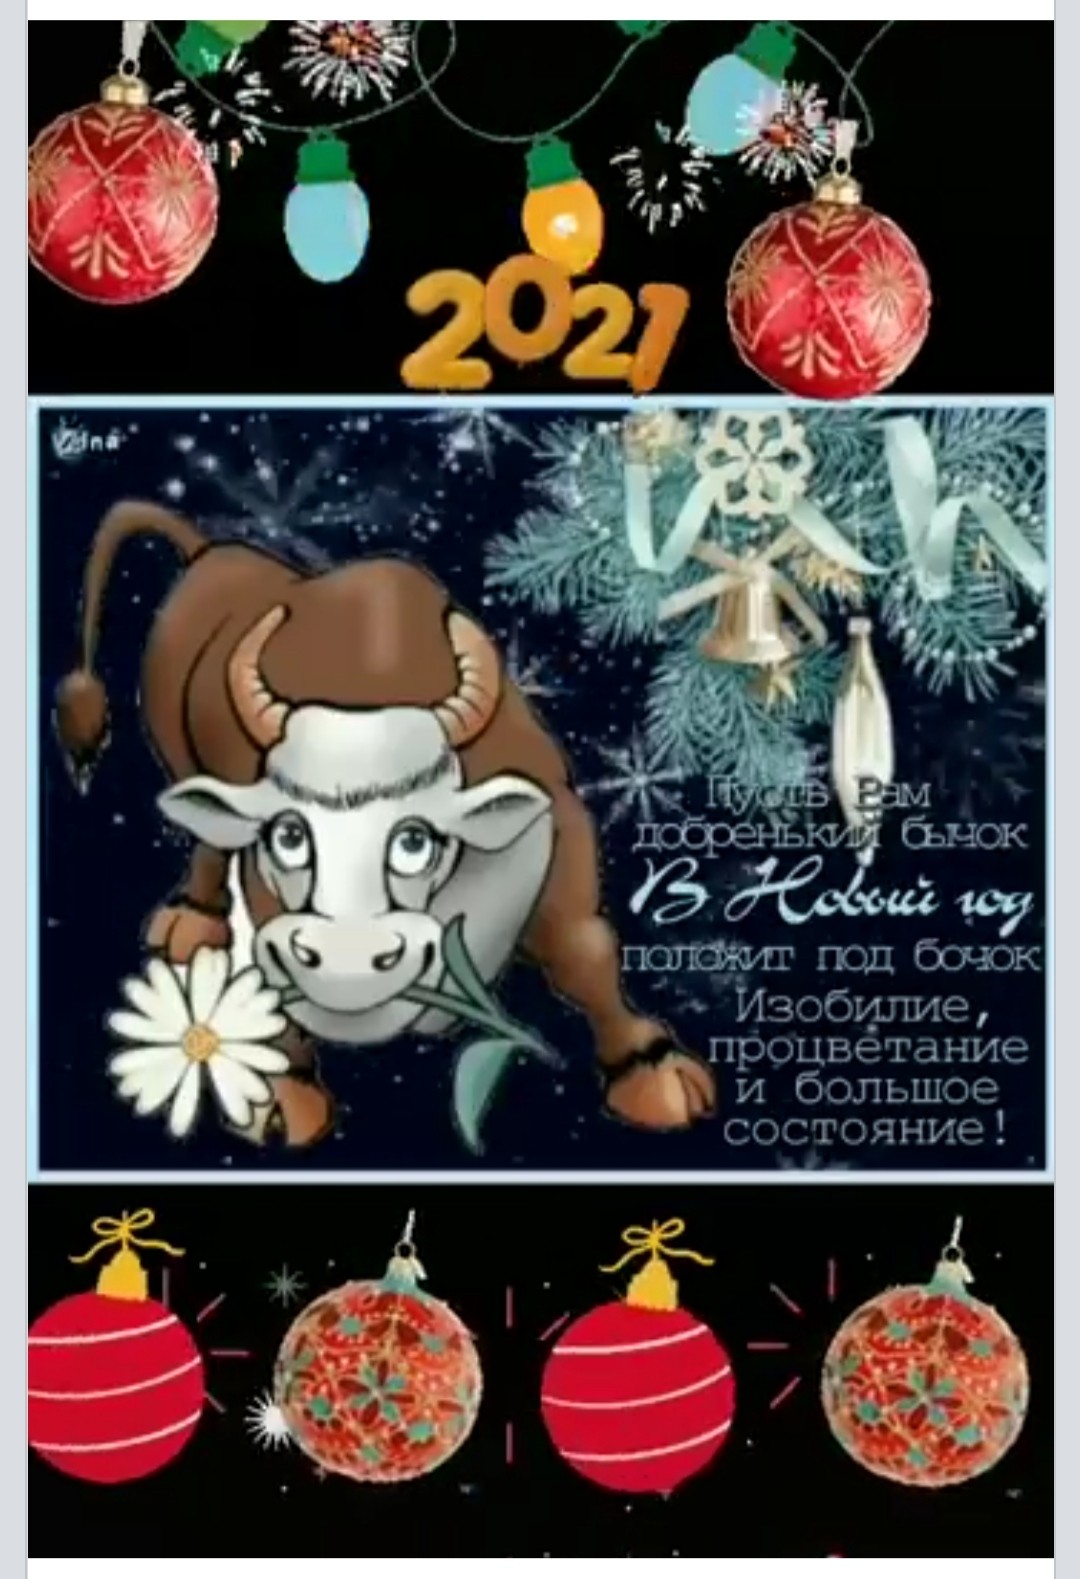 Поздравление от Быка с Новым годом	 прикольное в картинках - Поздравления с Новым годом 2021 с изображением Быка, короткие стихи, проза